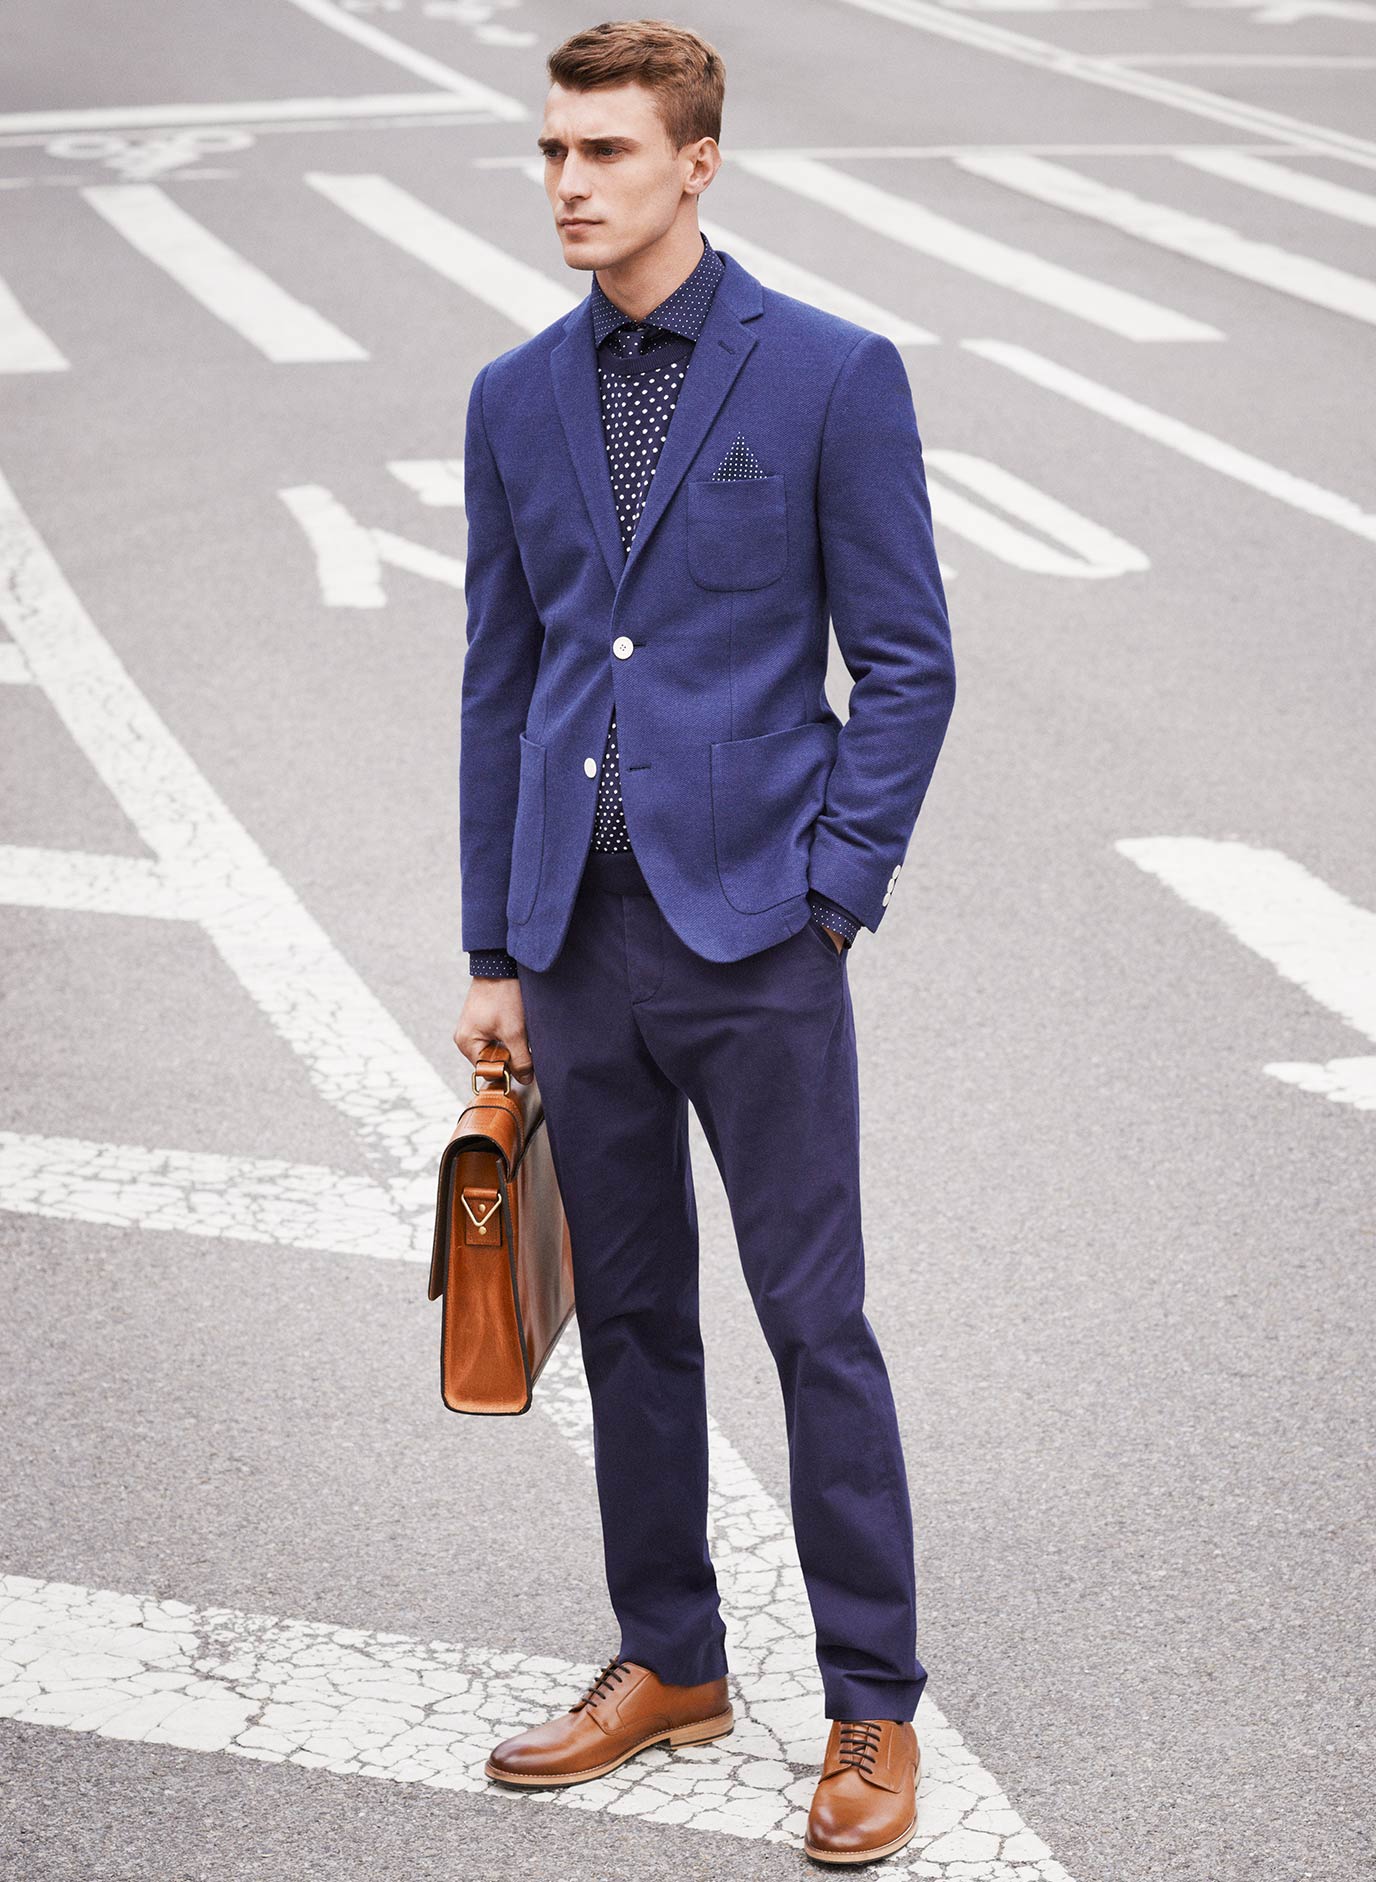 huella dactilar Tierra medio litro Estilo de oficina para él!!! H&M presenta una colección de hombre para los  looks de trabajo verano 2014 - Modalia.es